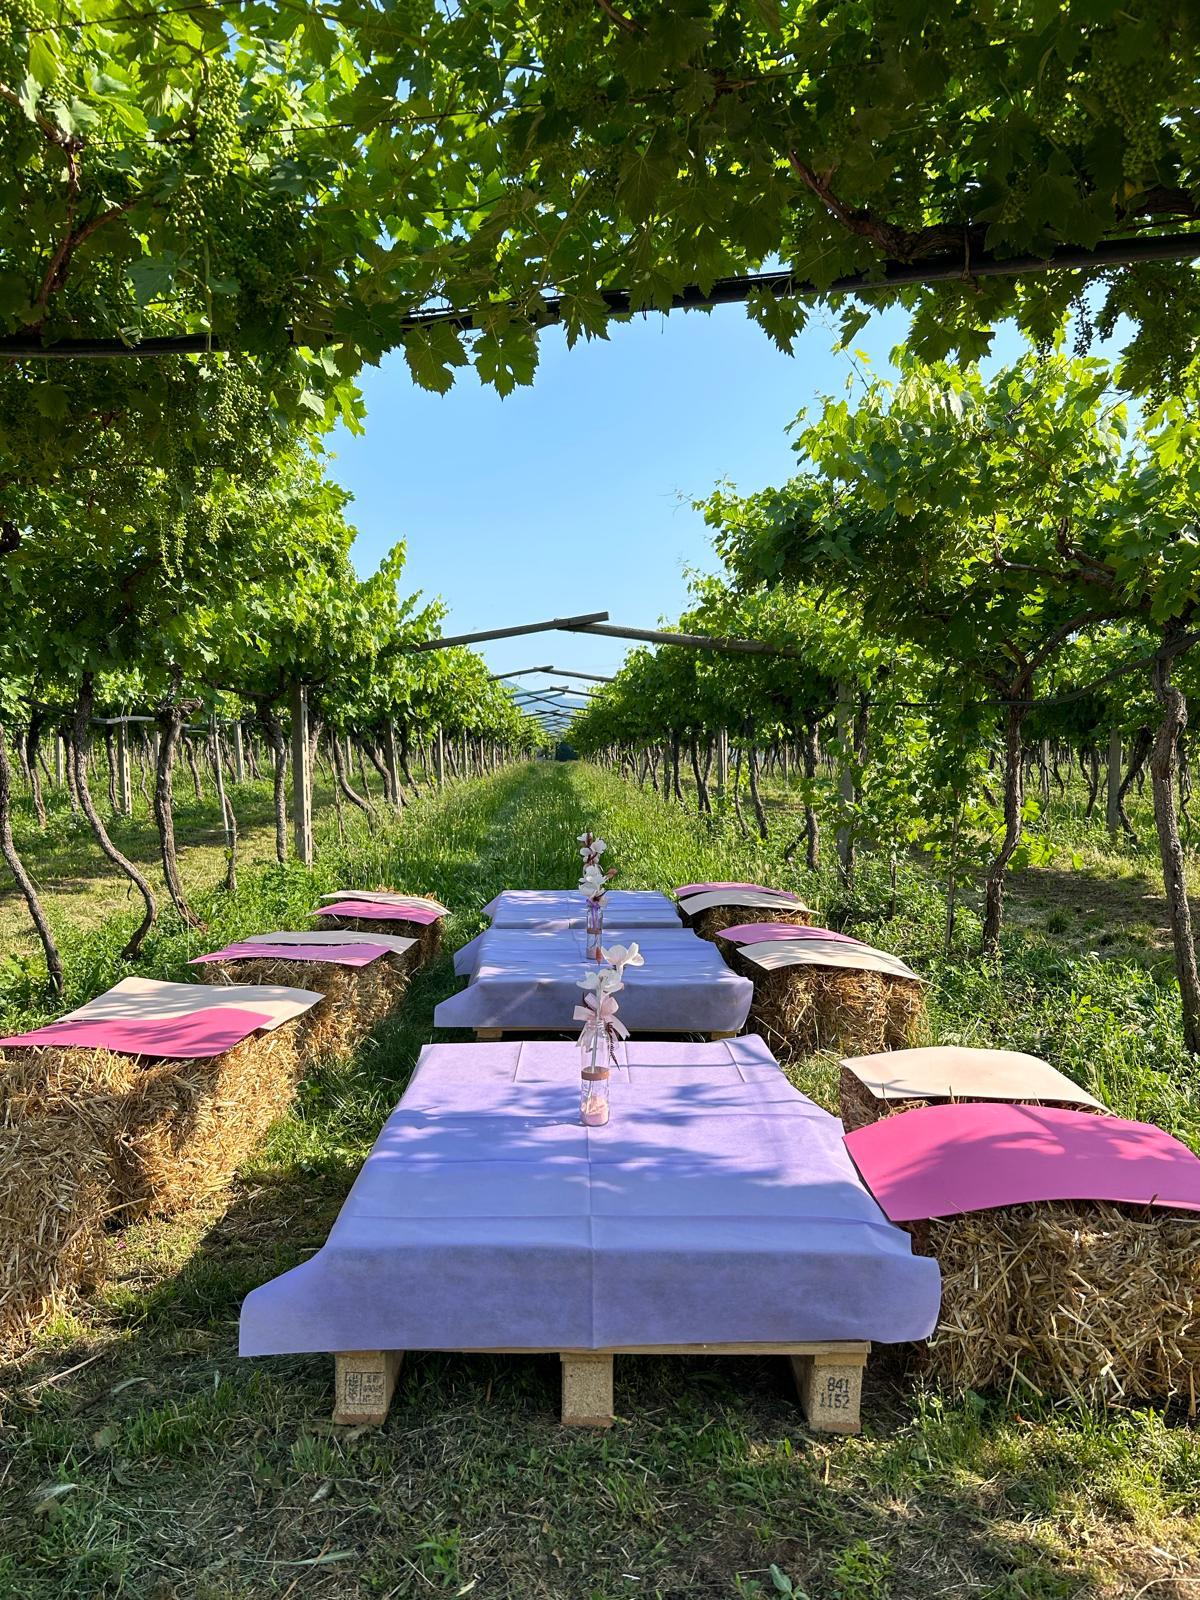 Picnic e degustazione tra le vigne dell'Amarone